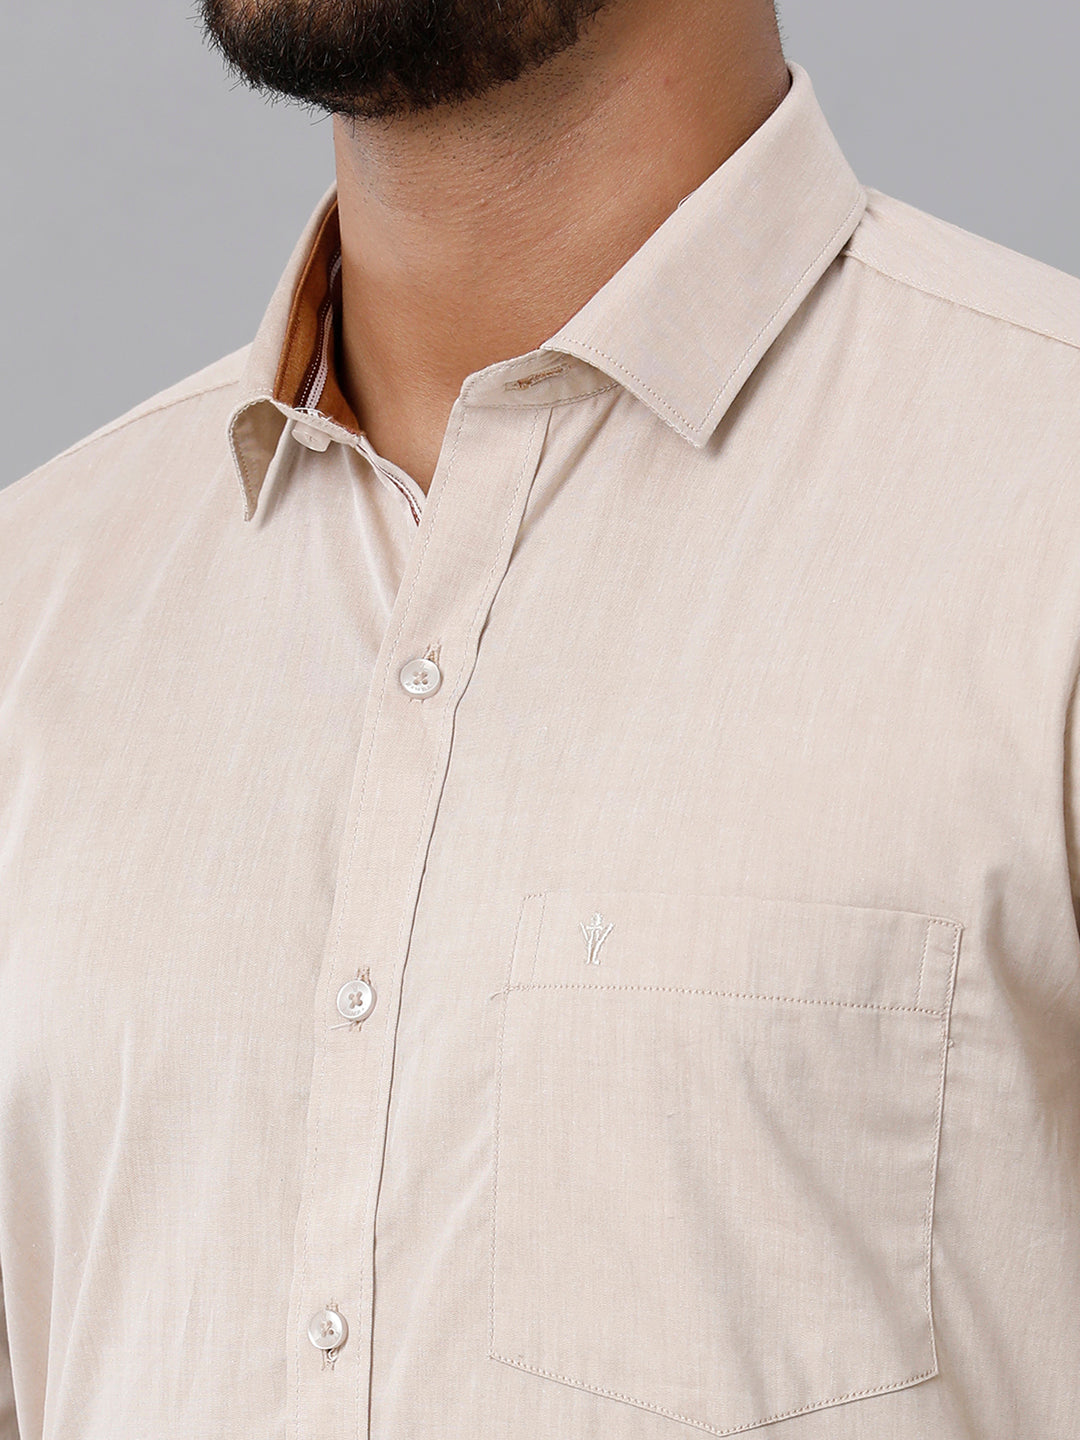 Mens Premium Cotton Formal Shirt Full Sleeves Light Brown MH G113